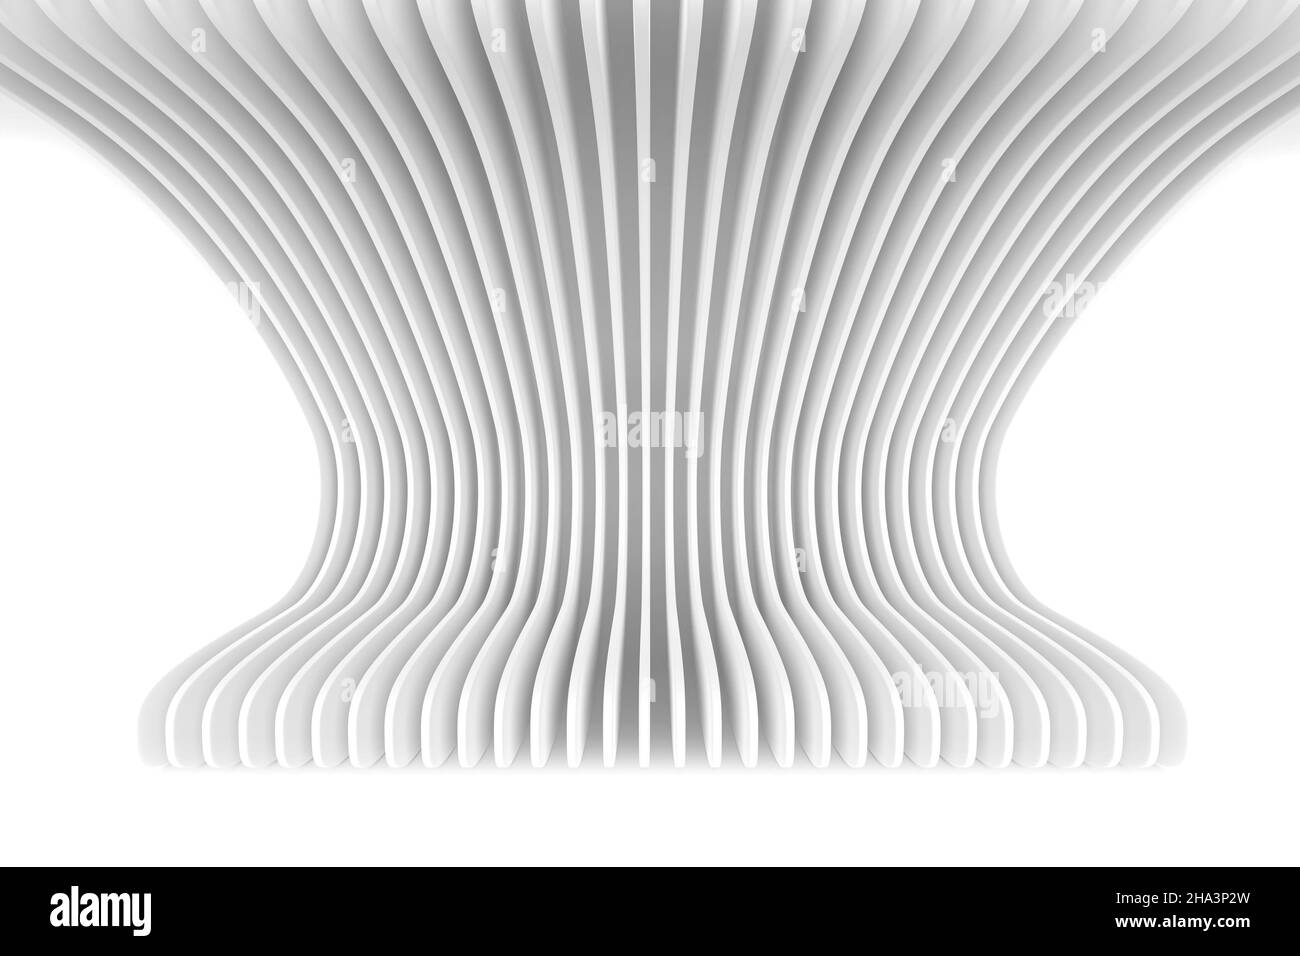 Fondo geométrico abstracto. 3d ilustración de curvas blancas Foto de stock